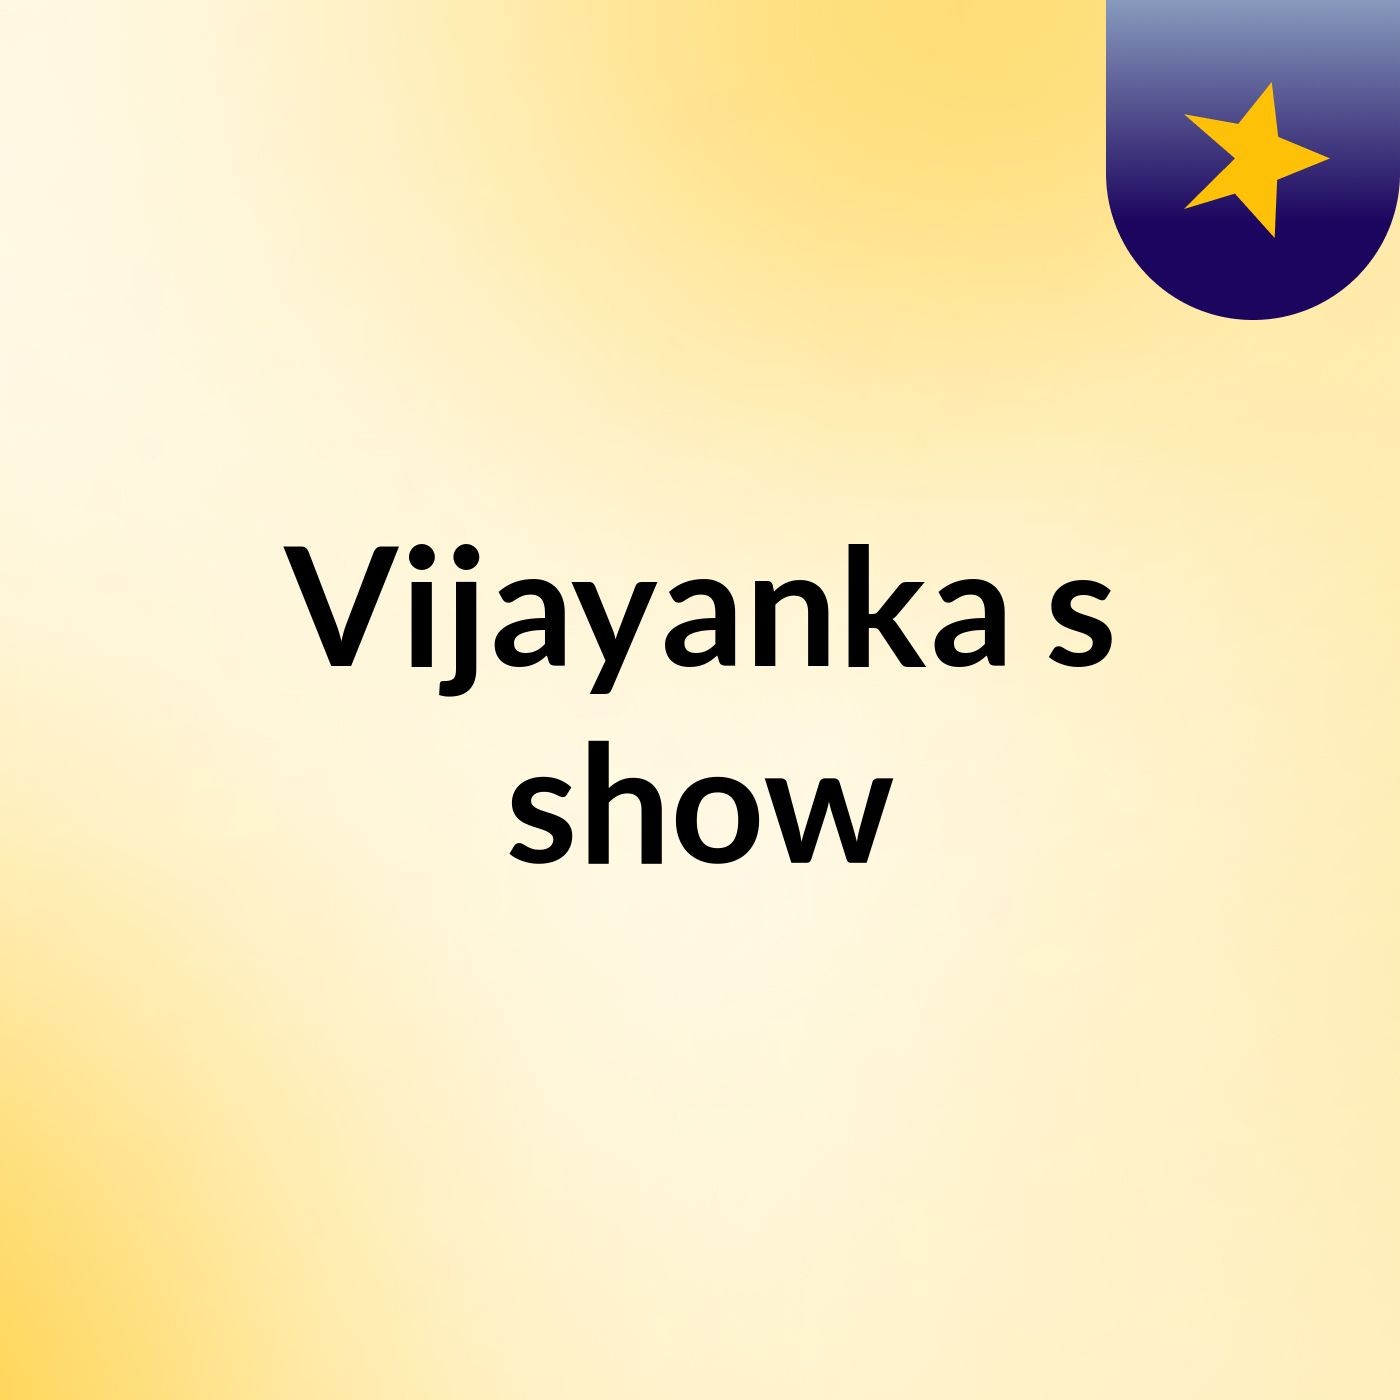 Vijayanka's show